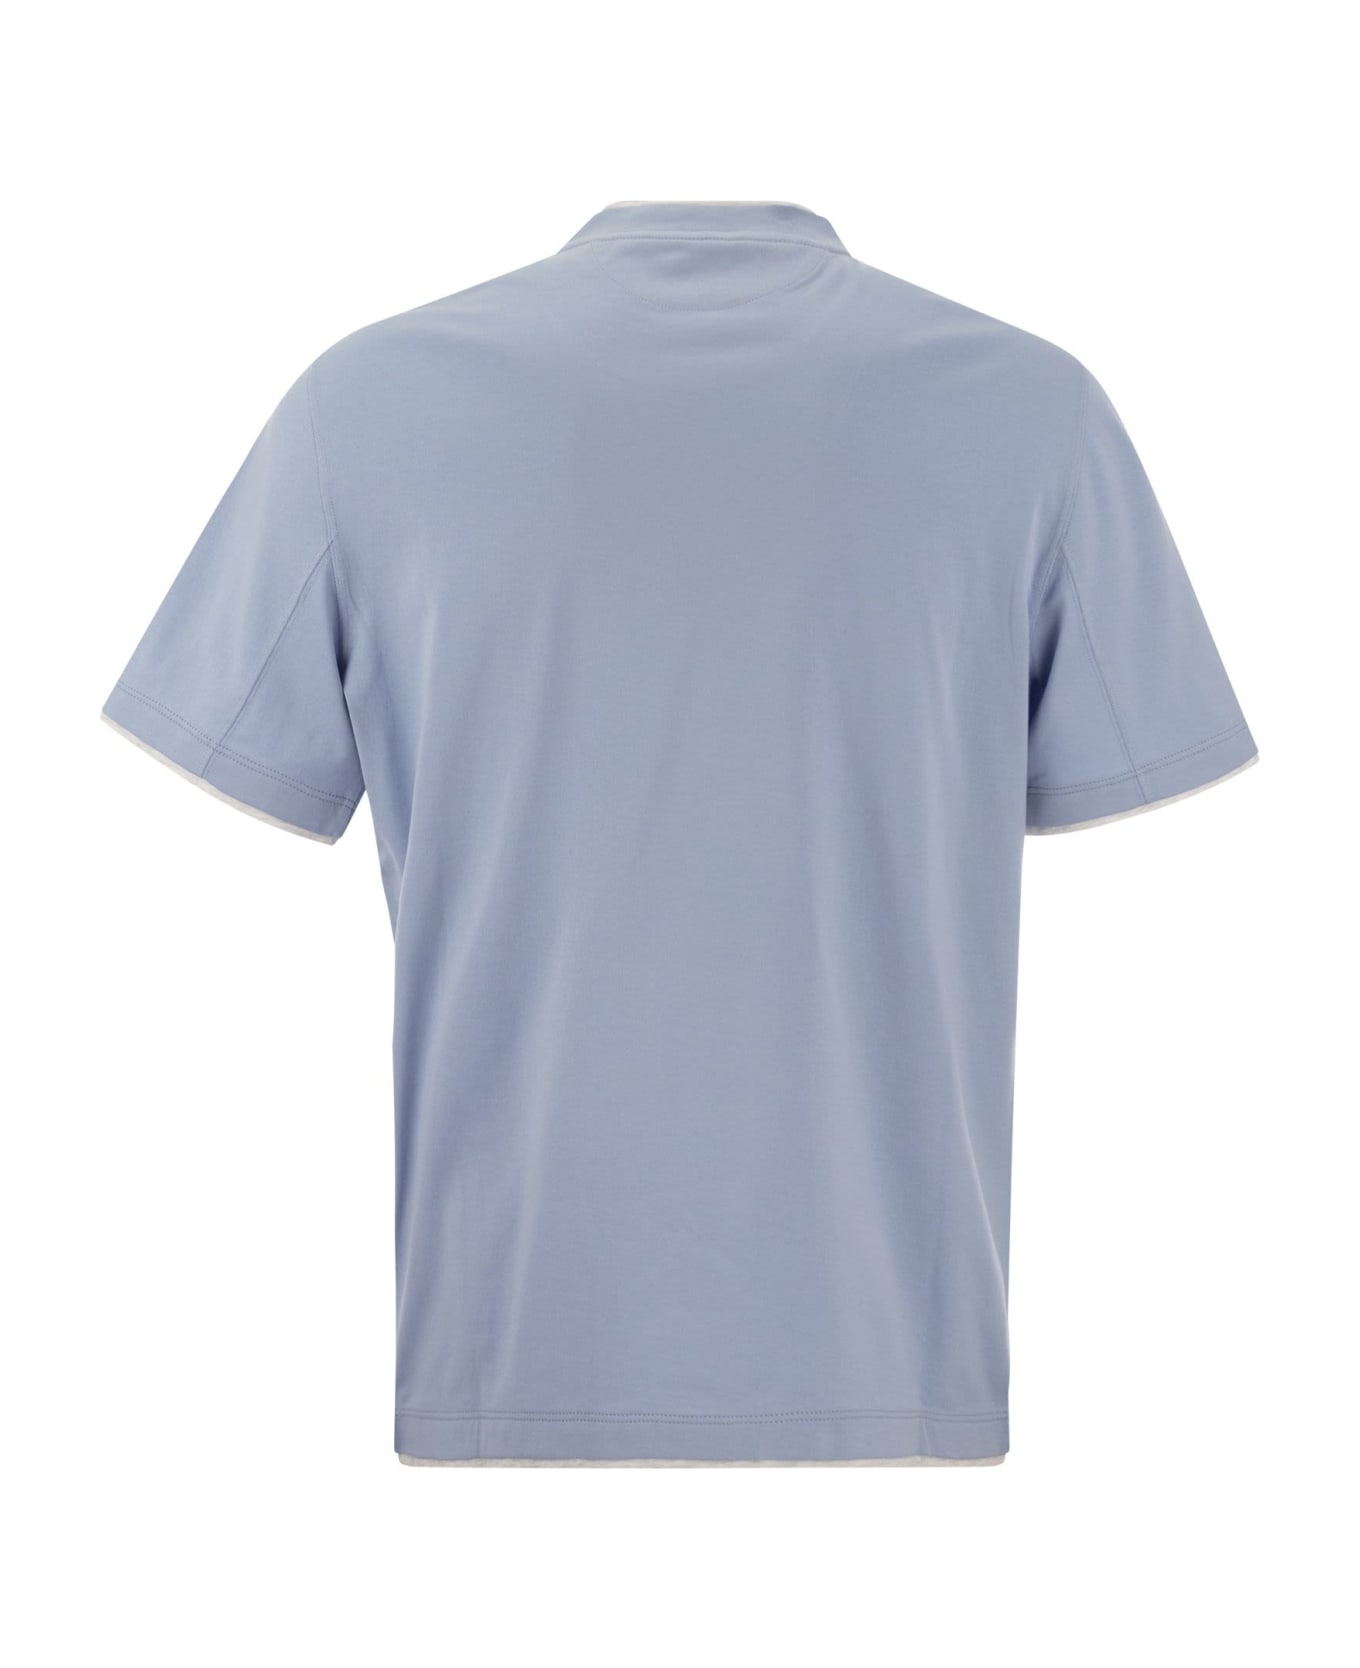 Brunello Cucinelli Layered T-shirt - Light Blue